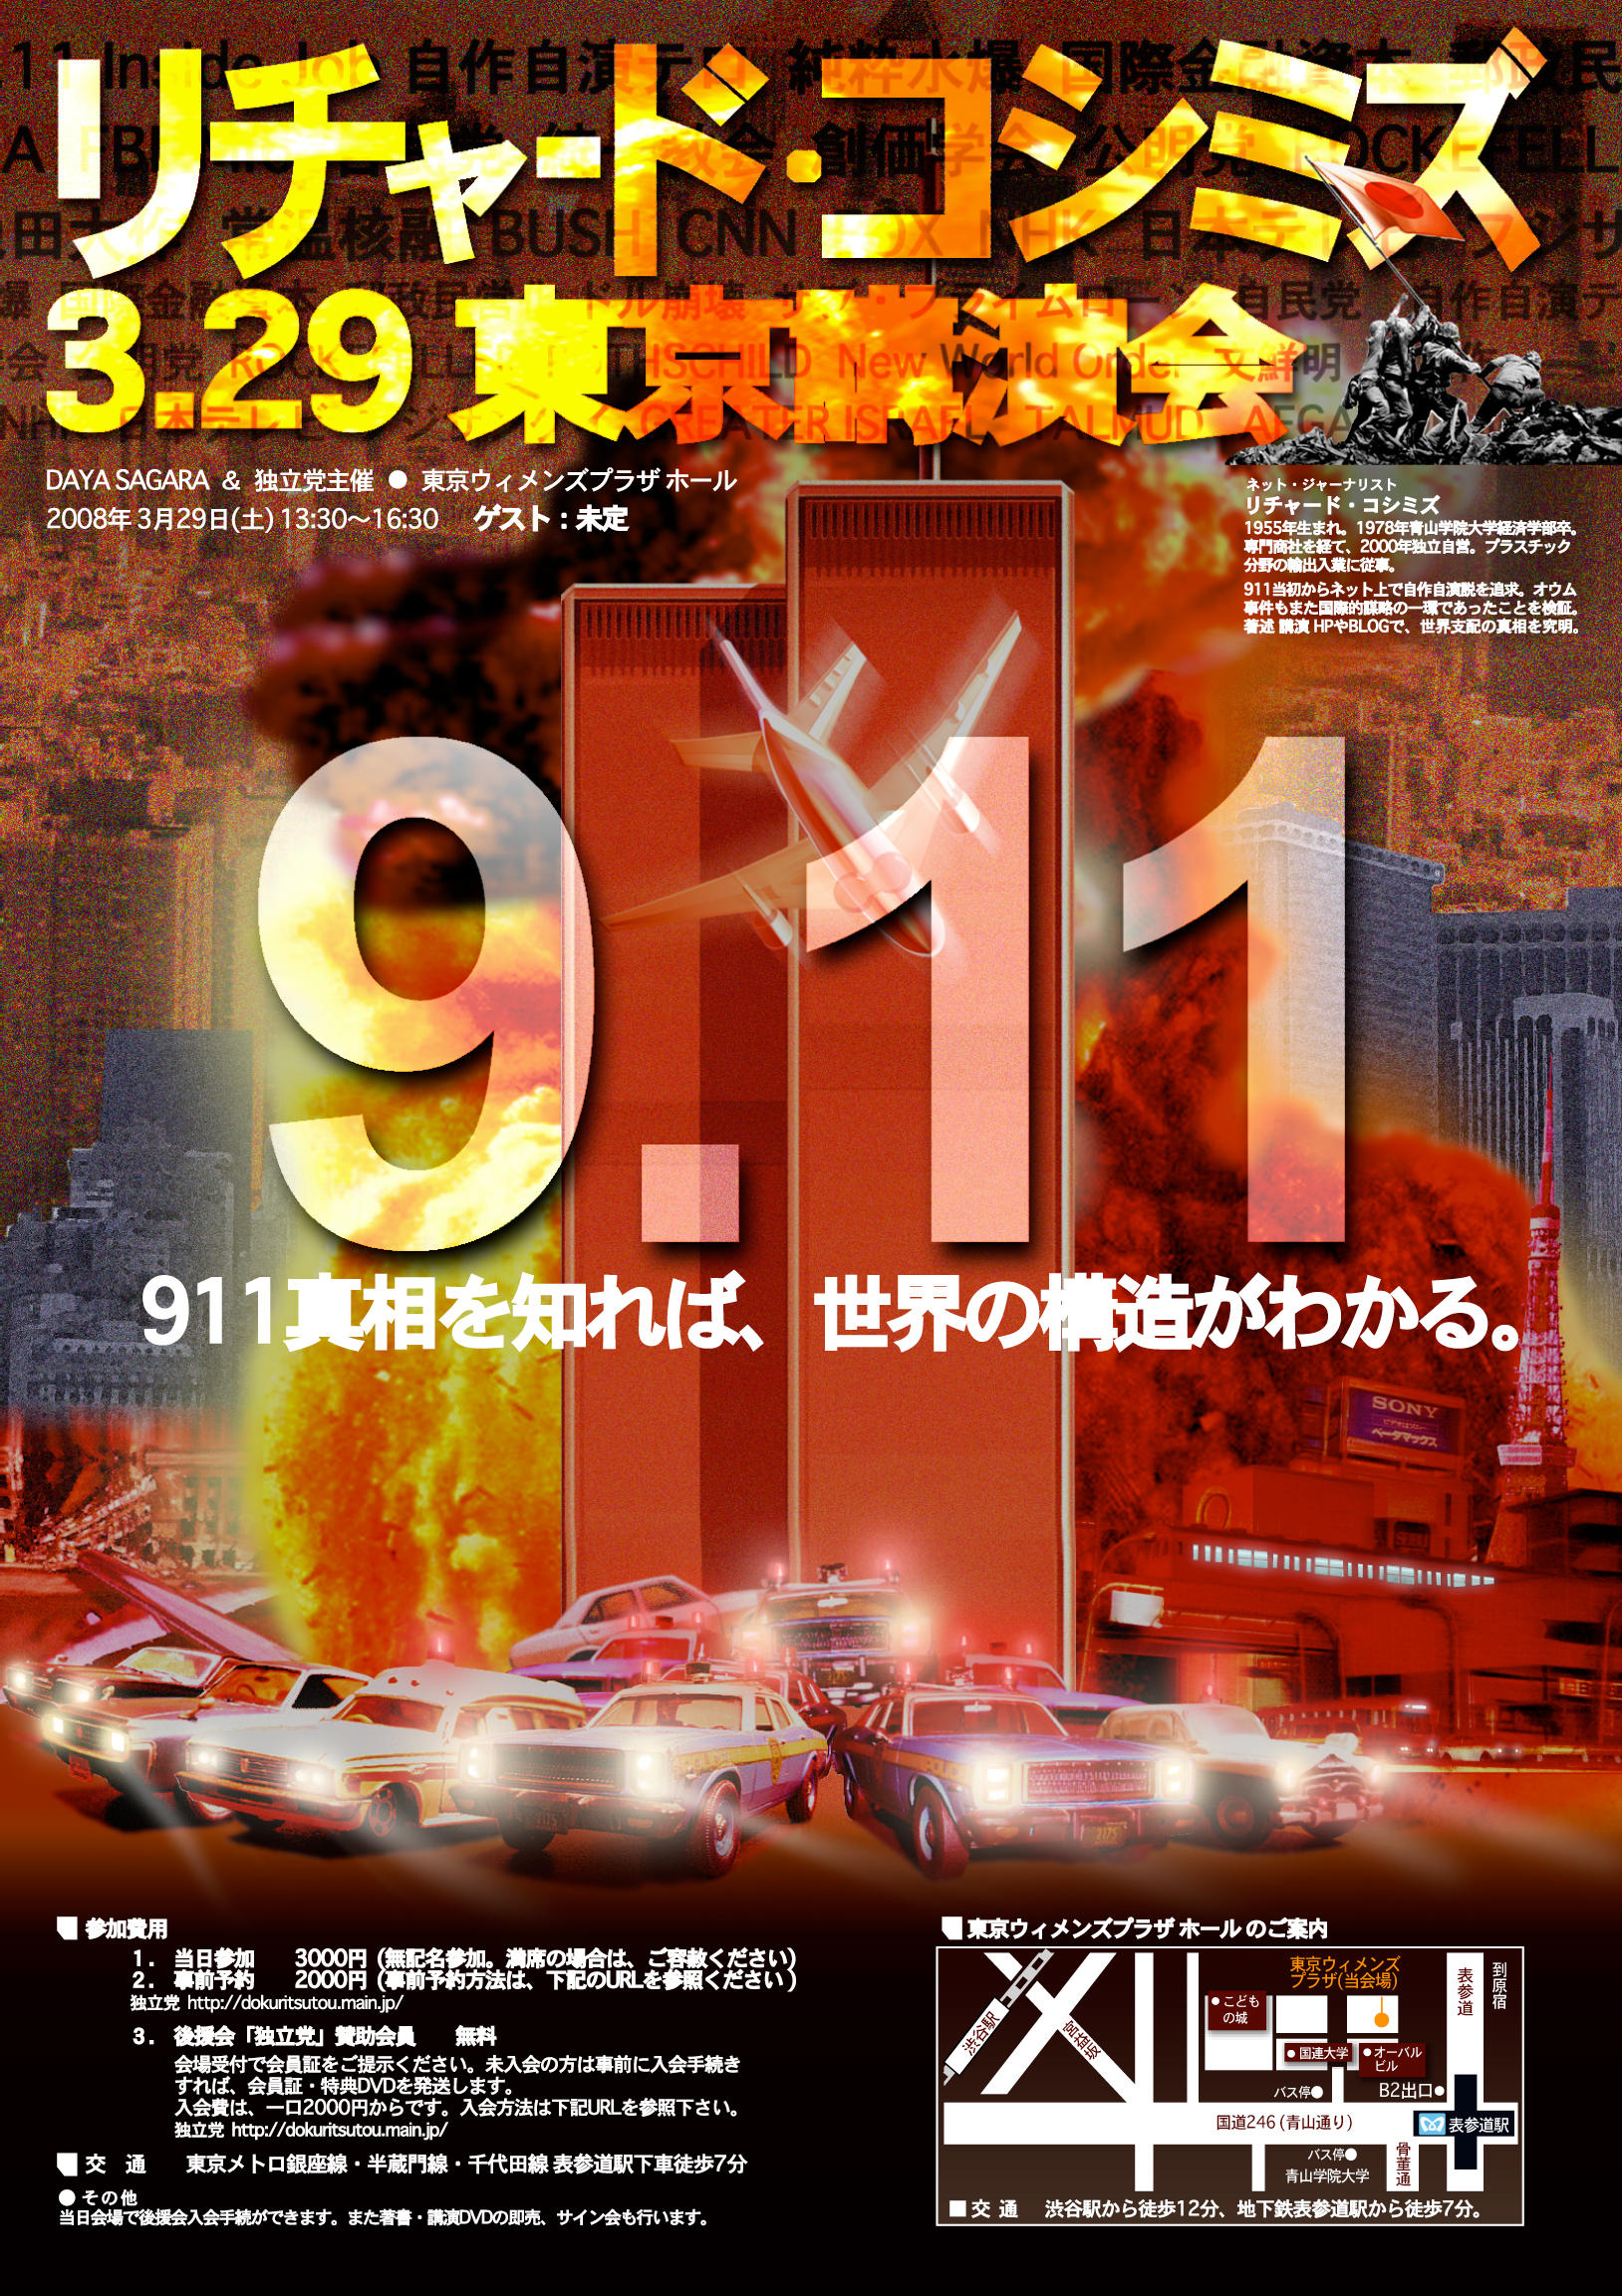 3月29日東京青山講演会「911真相を知れば、世界の構造がわかる」